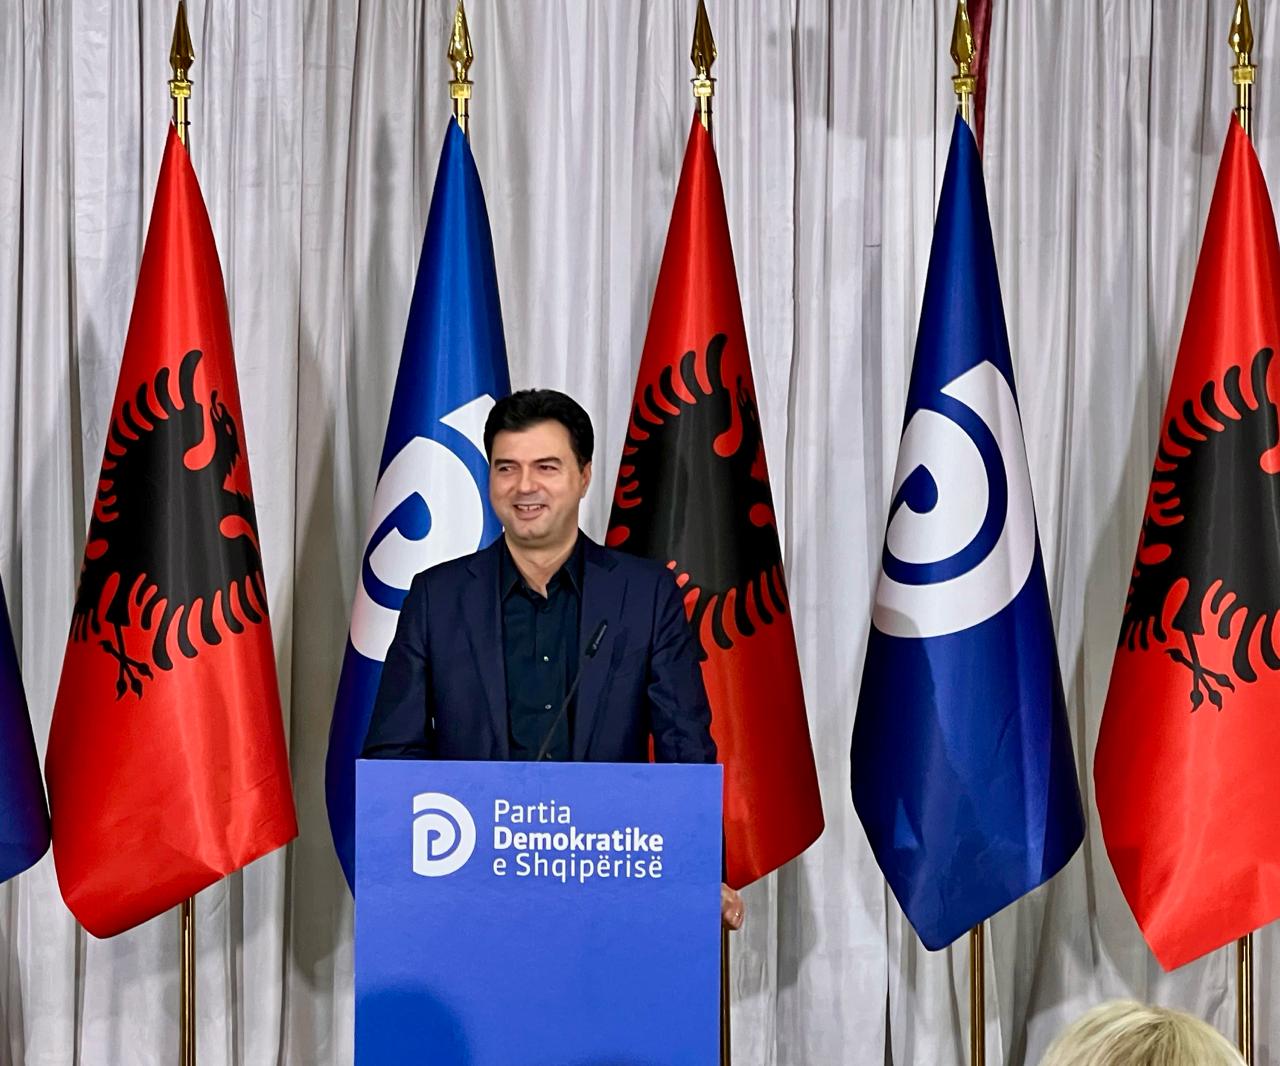 demokratet nuk u bene pjese e percarjes basha shqiptaret jane lodhur nga fjalet boshe beteja jone per te ardhmen e femijeve